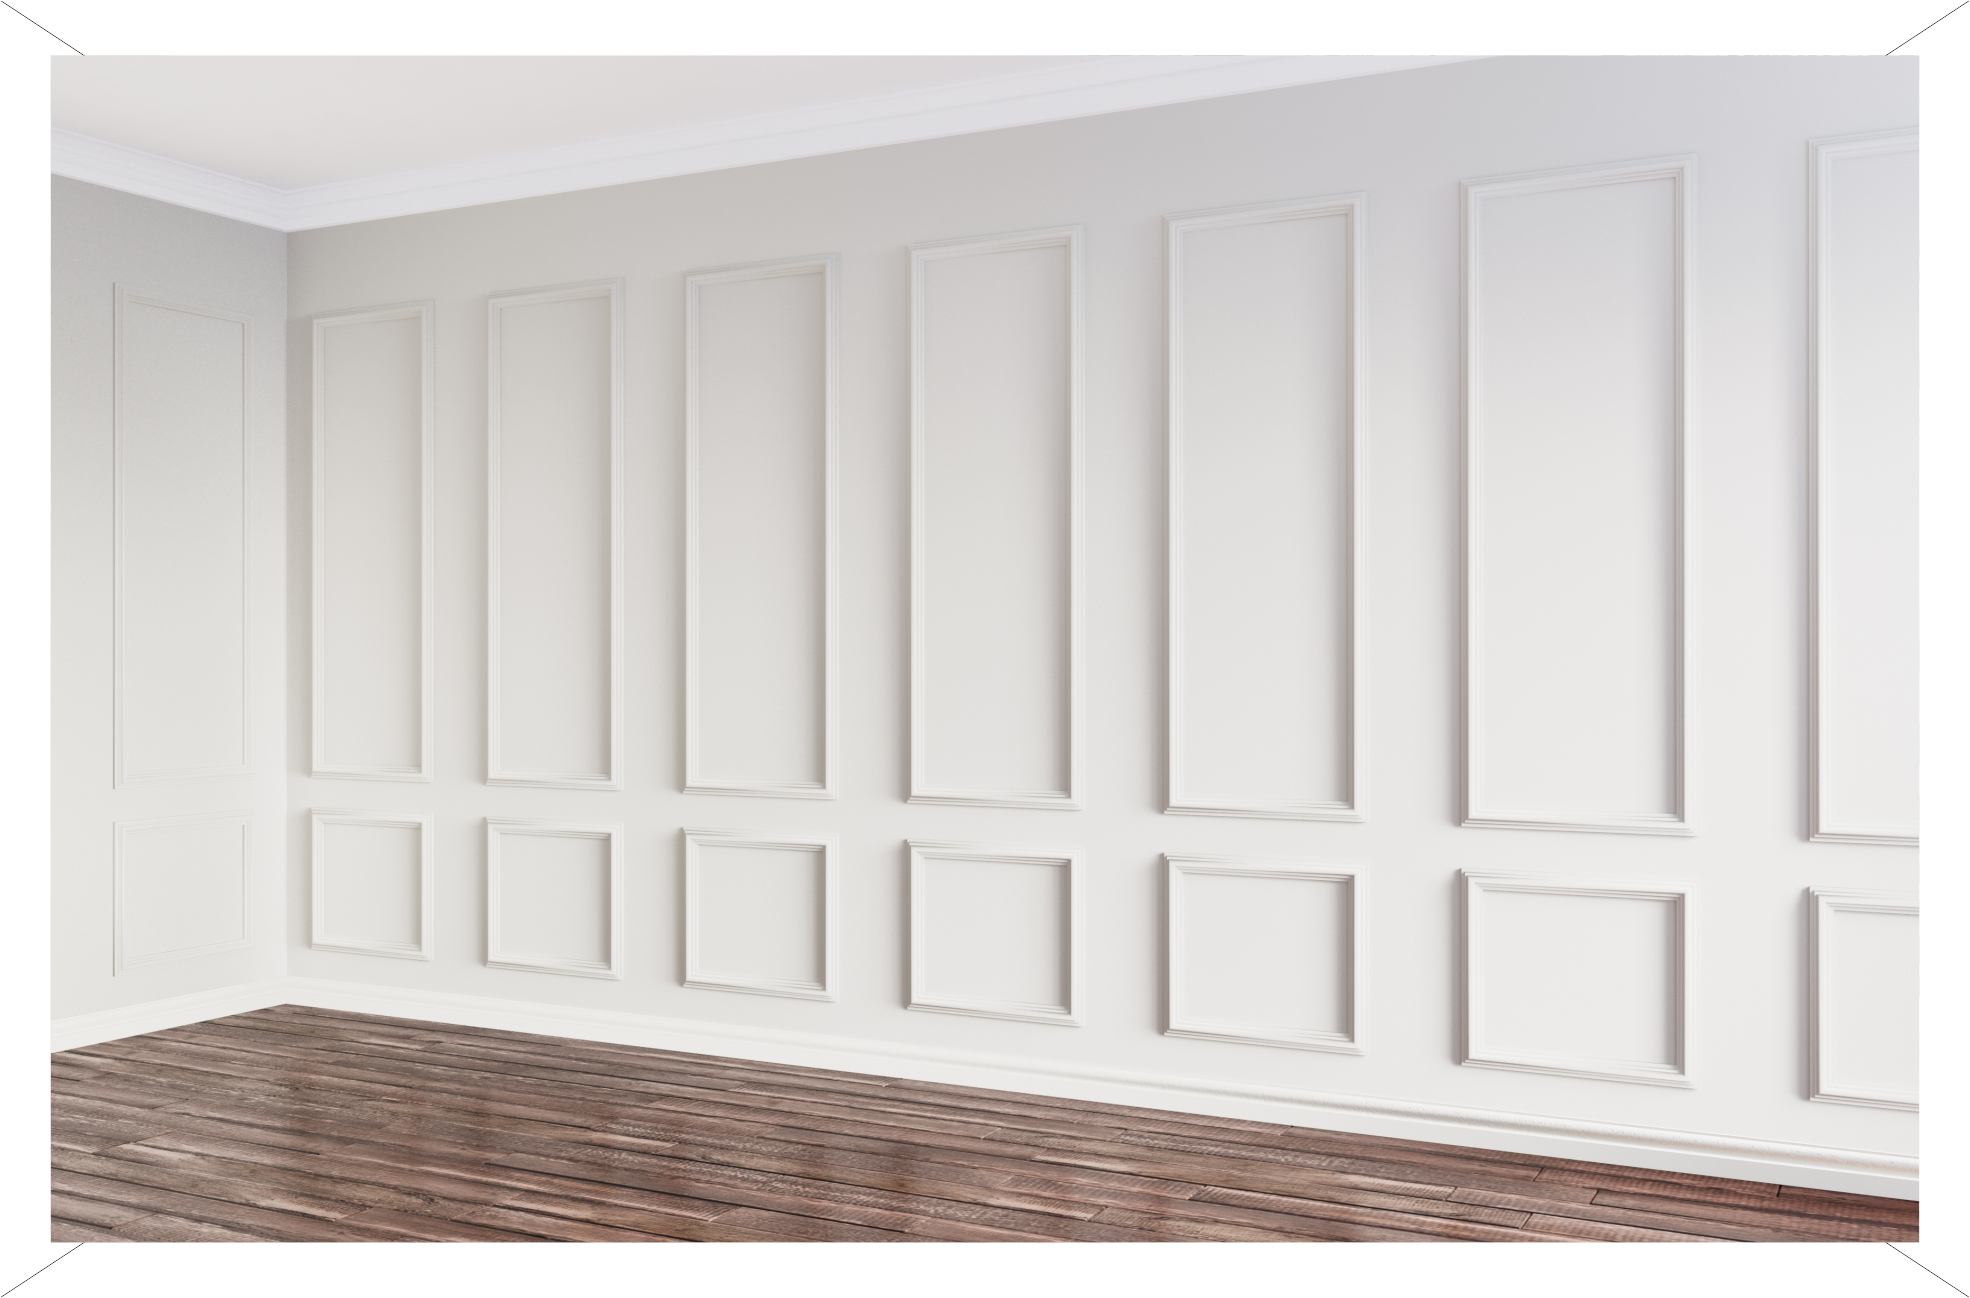 <p>Fácil e prático de instalar, deixe sua casa com um <strong>visual elegante</strong> com placas projetadas para formarem um padrão em alto relevo com efeito 3D.</p>
